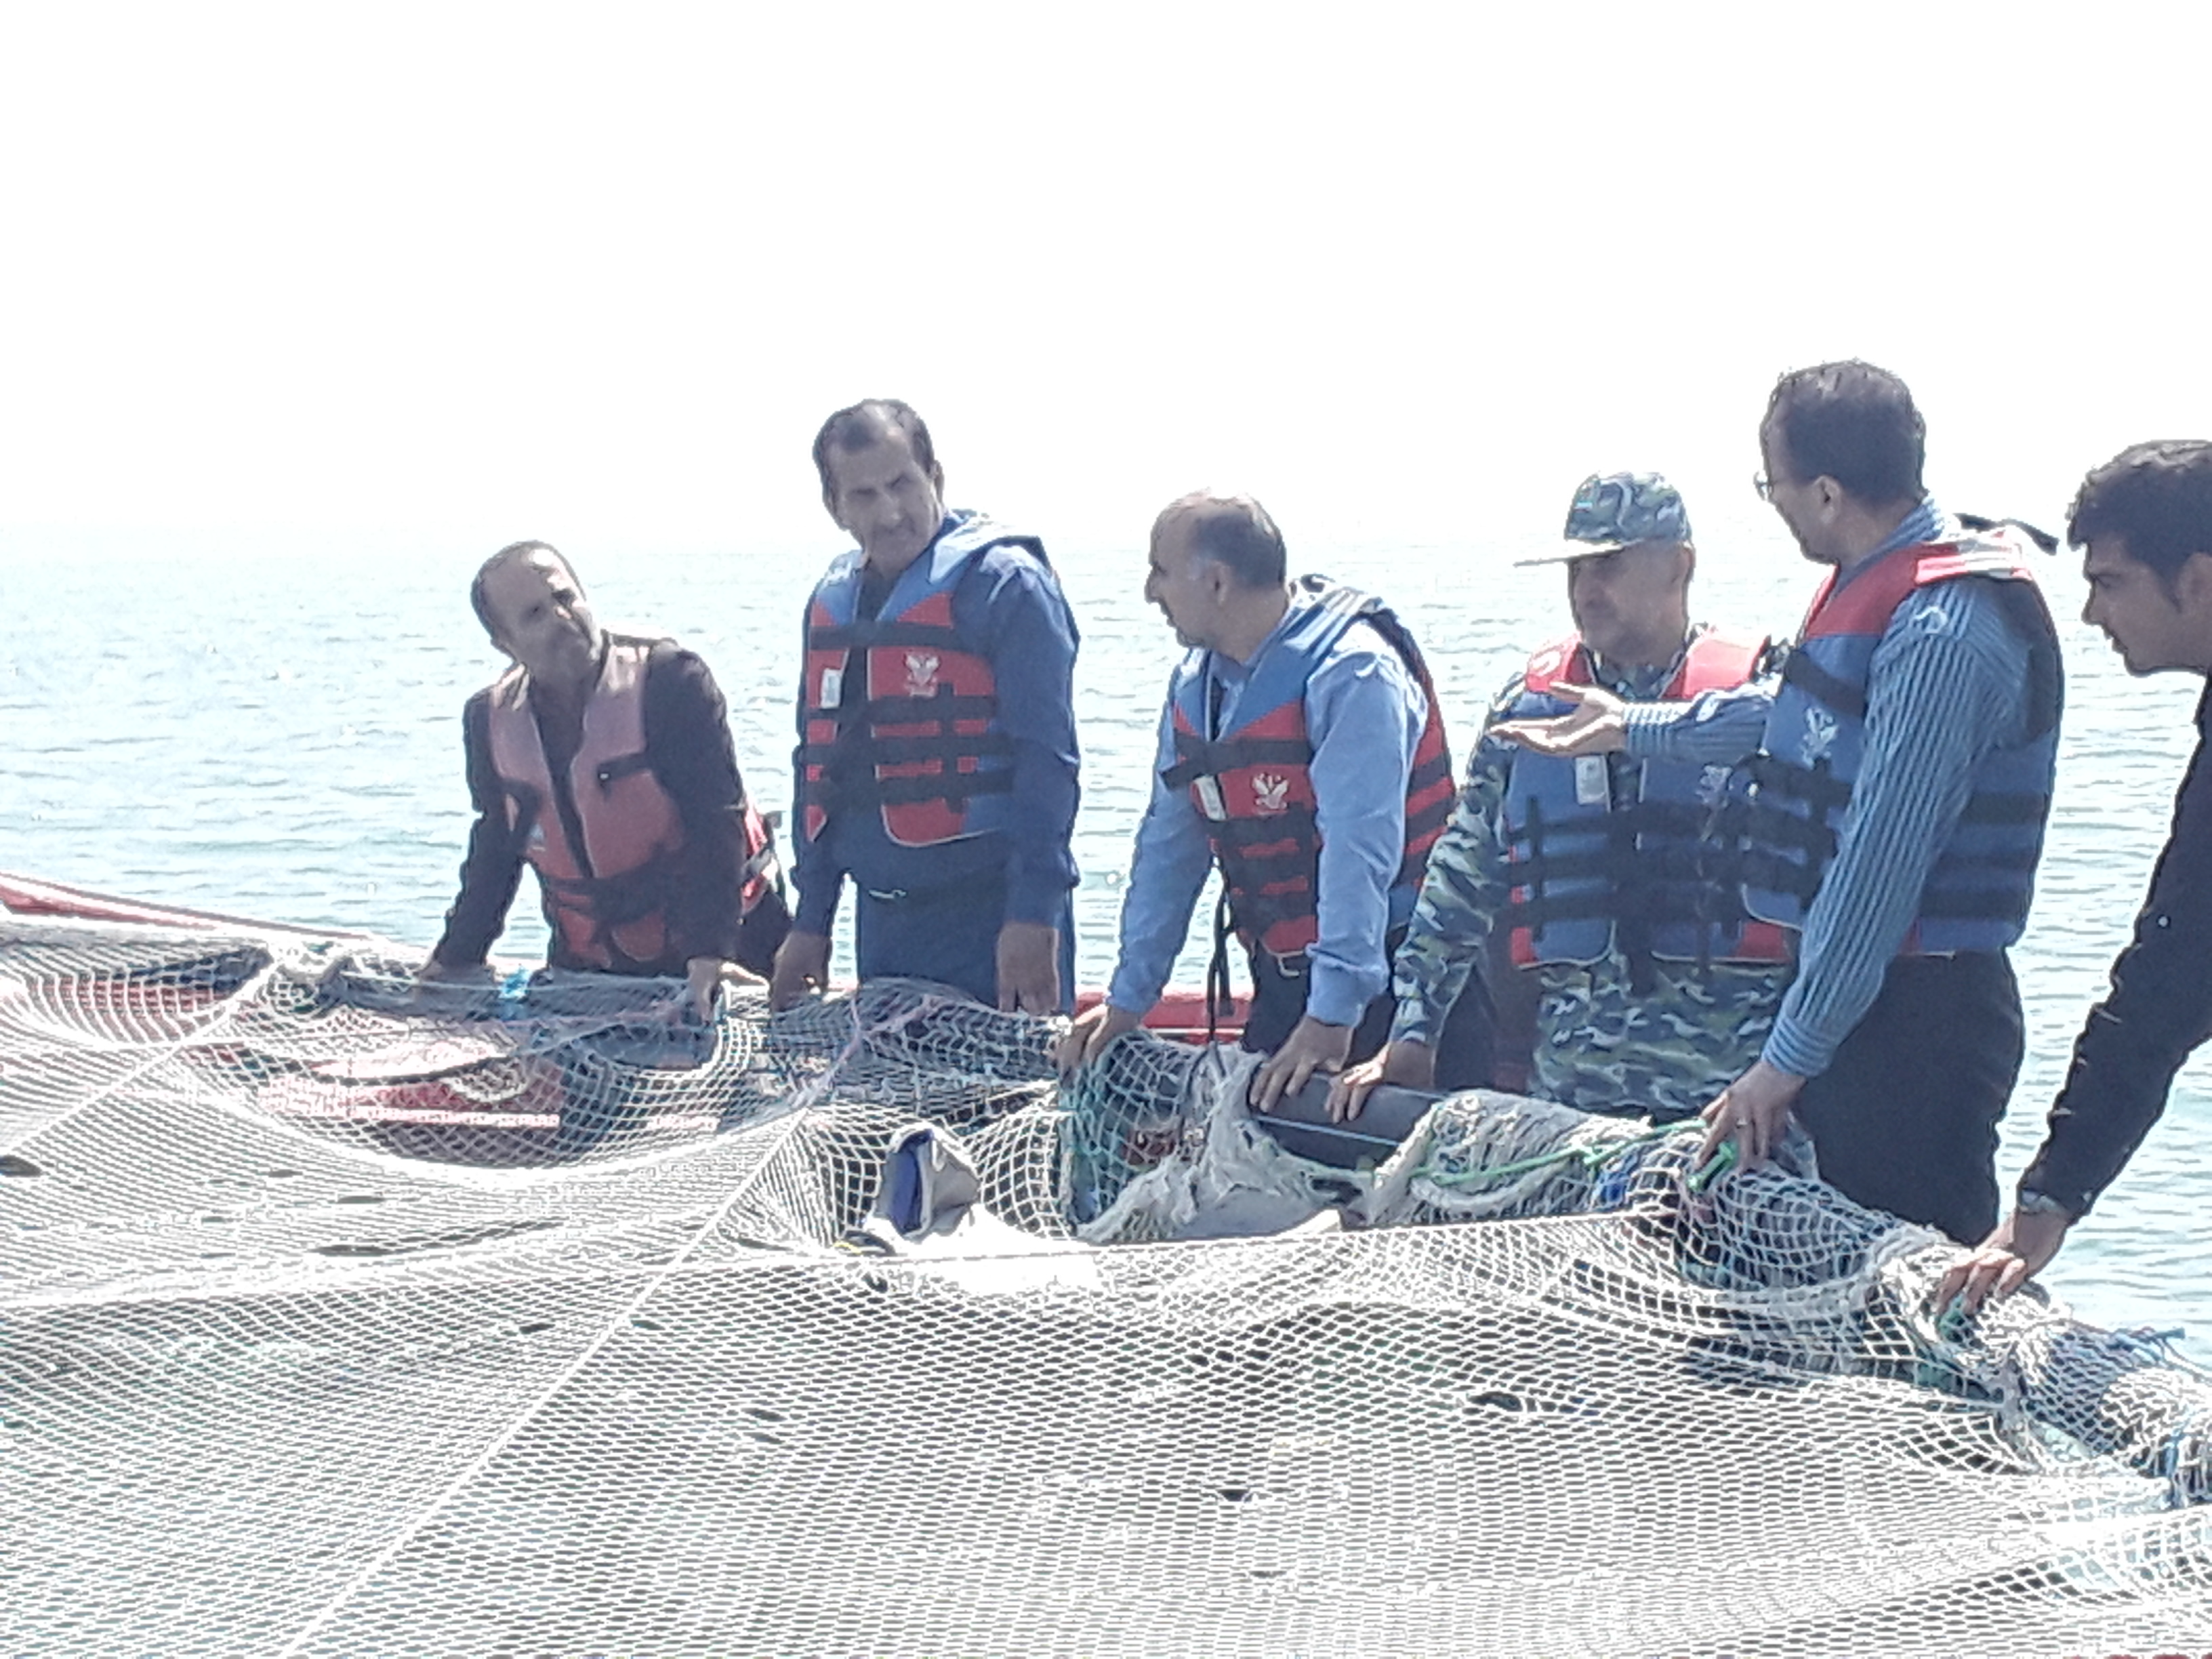   رﺋیس سازمان دامپزشکی کشوردربازدید ازپرورش ماهی درقفس درنوشهرگفت: شرایط تولید ماهی درقفسهای دریایی (بهداشتی وکیفیت) برای صادرات  مهیا است